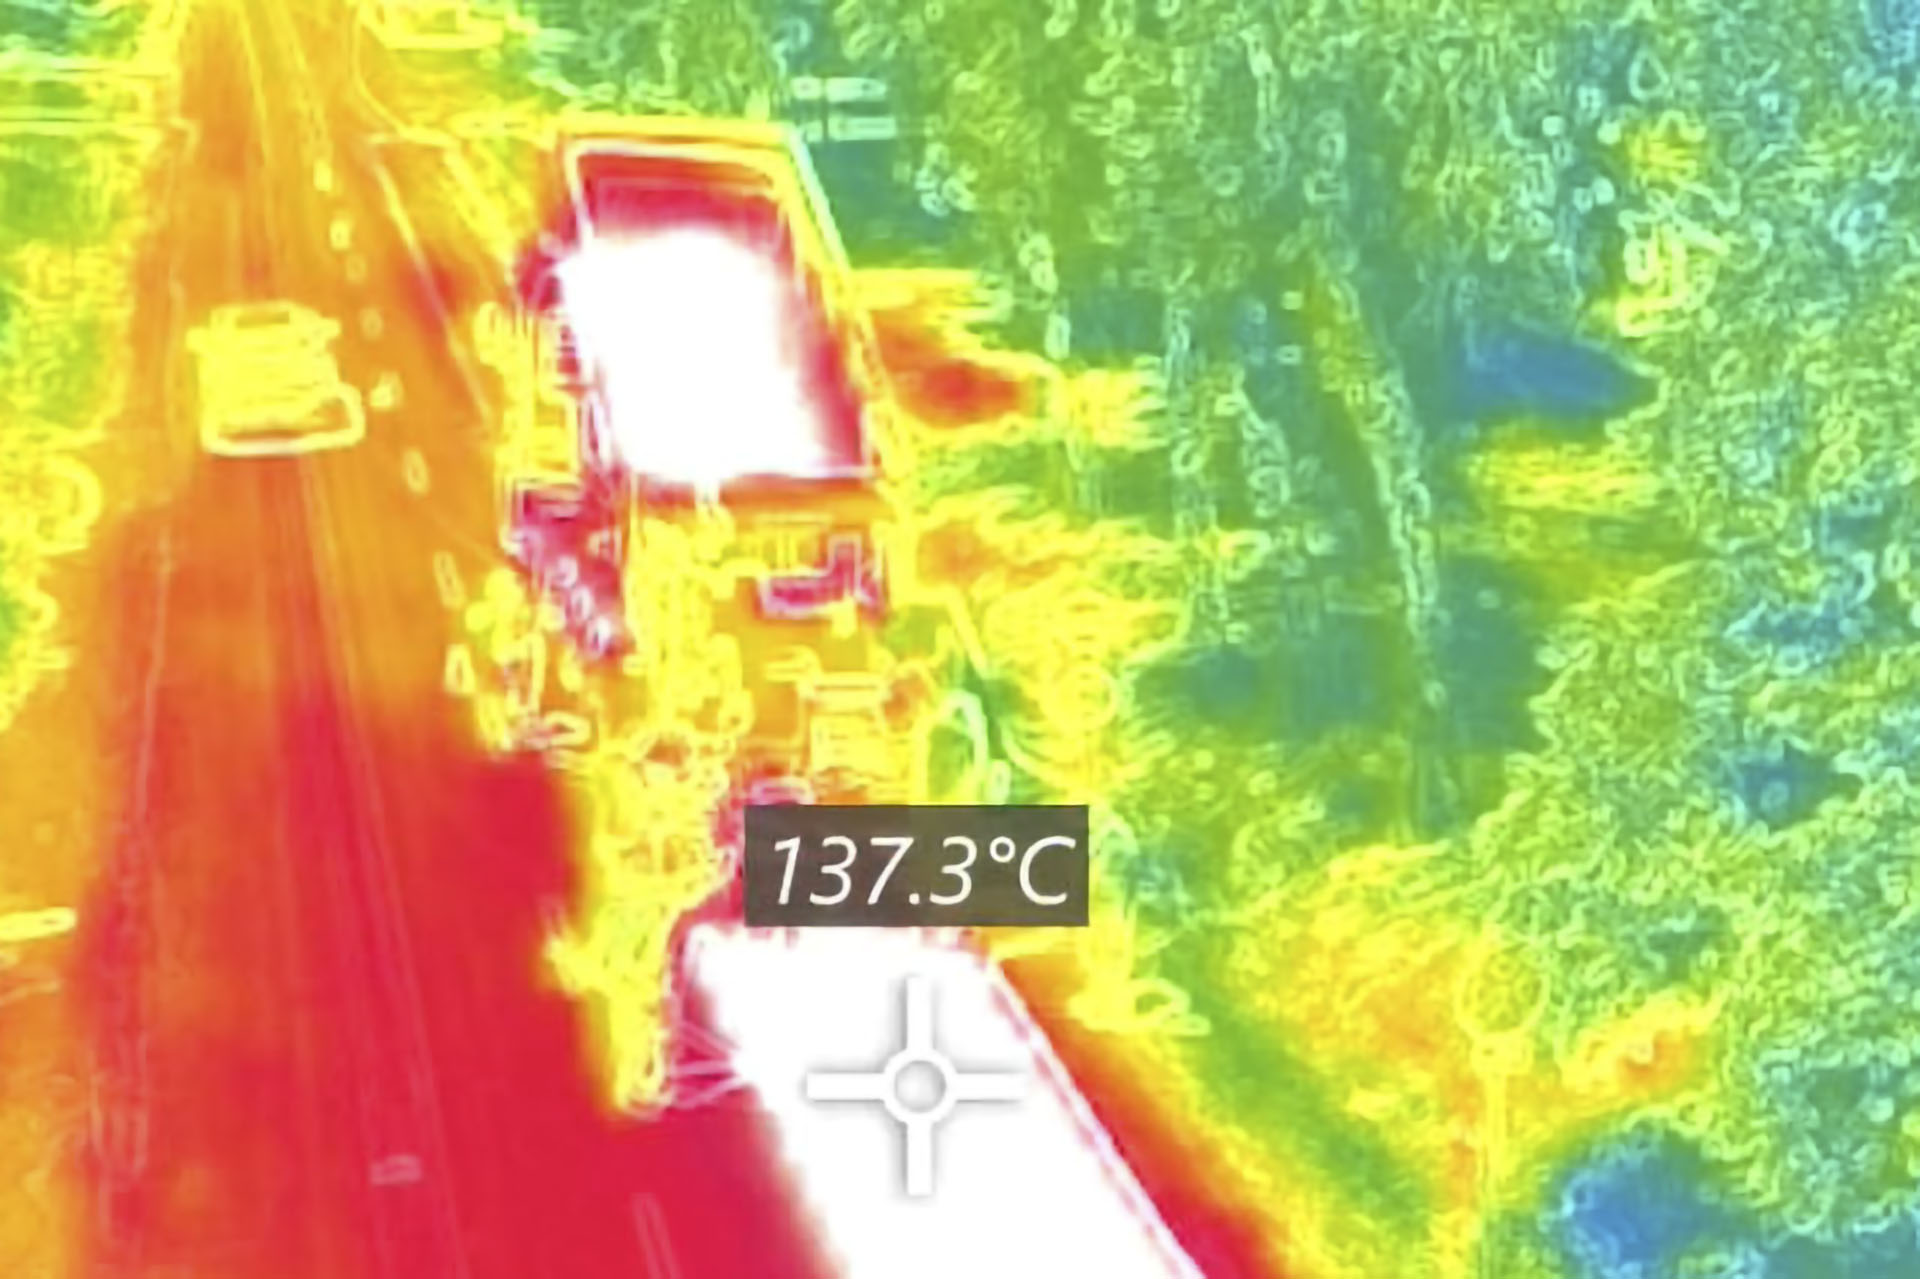 Pusztulat meleg van, 140 fokot mértek egy Pest megyei településen